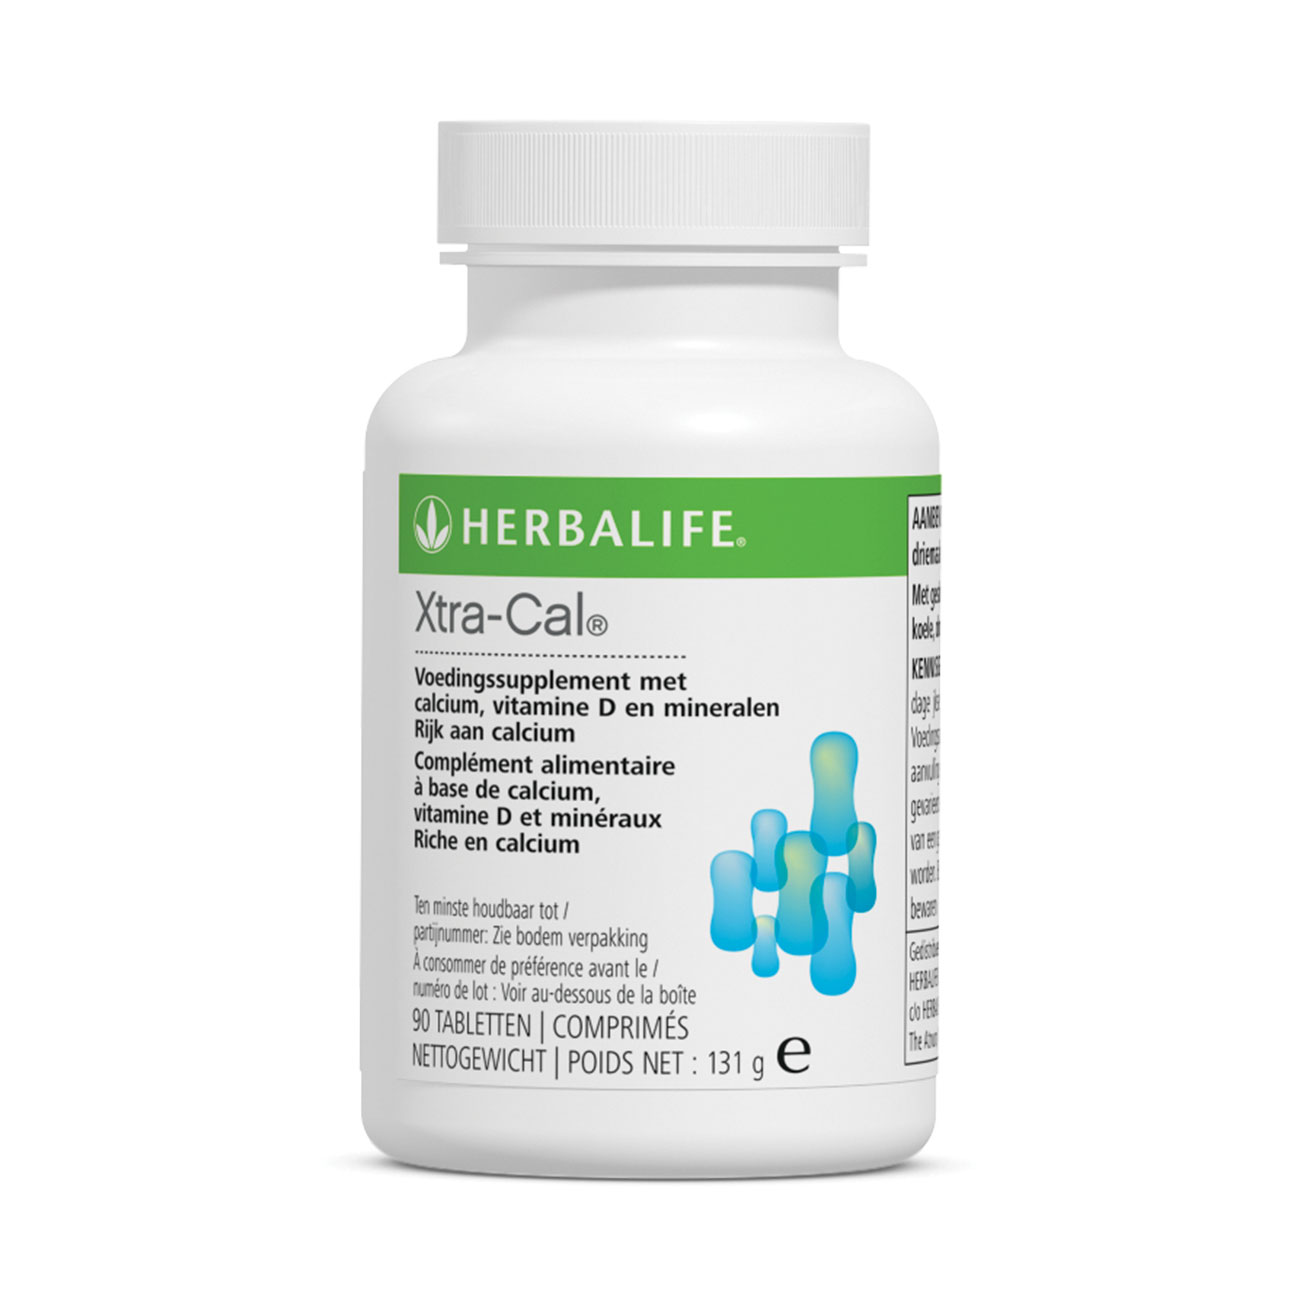 Xtra-Cal® Complément à base de calcium, vitamines D et minéraux product shot